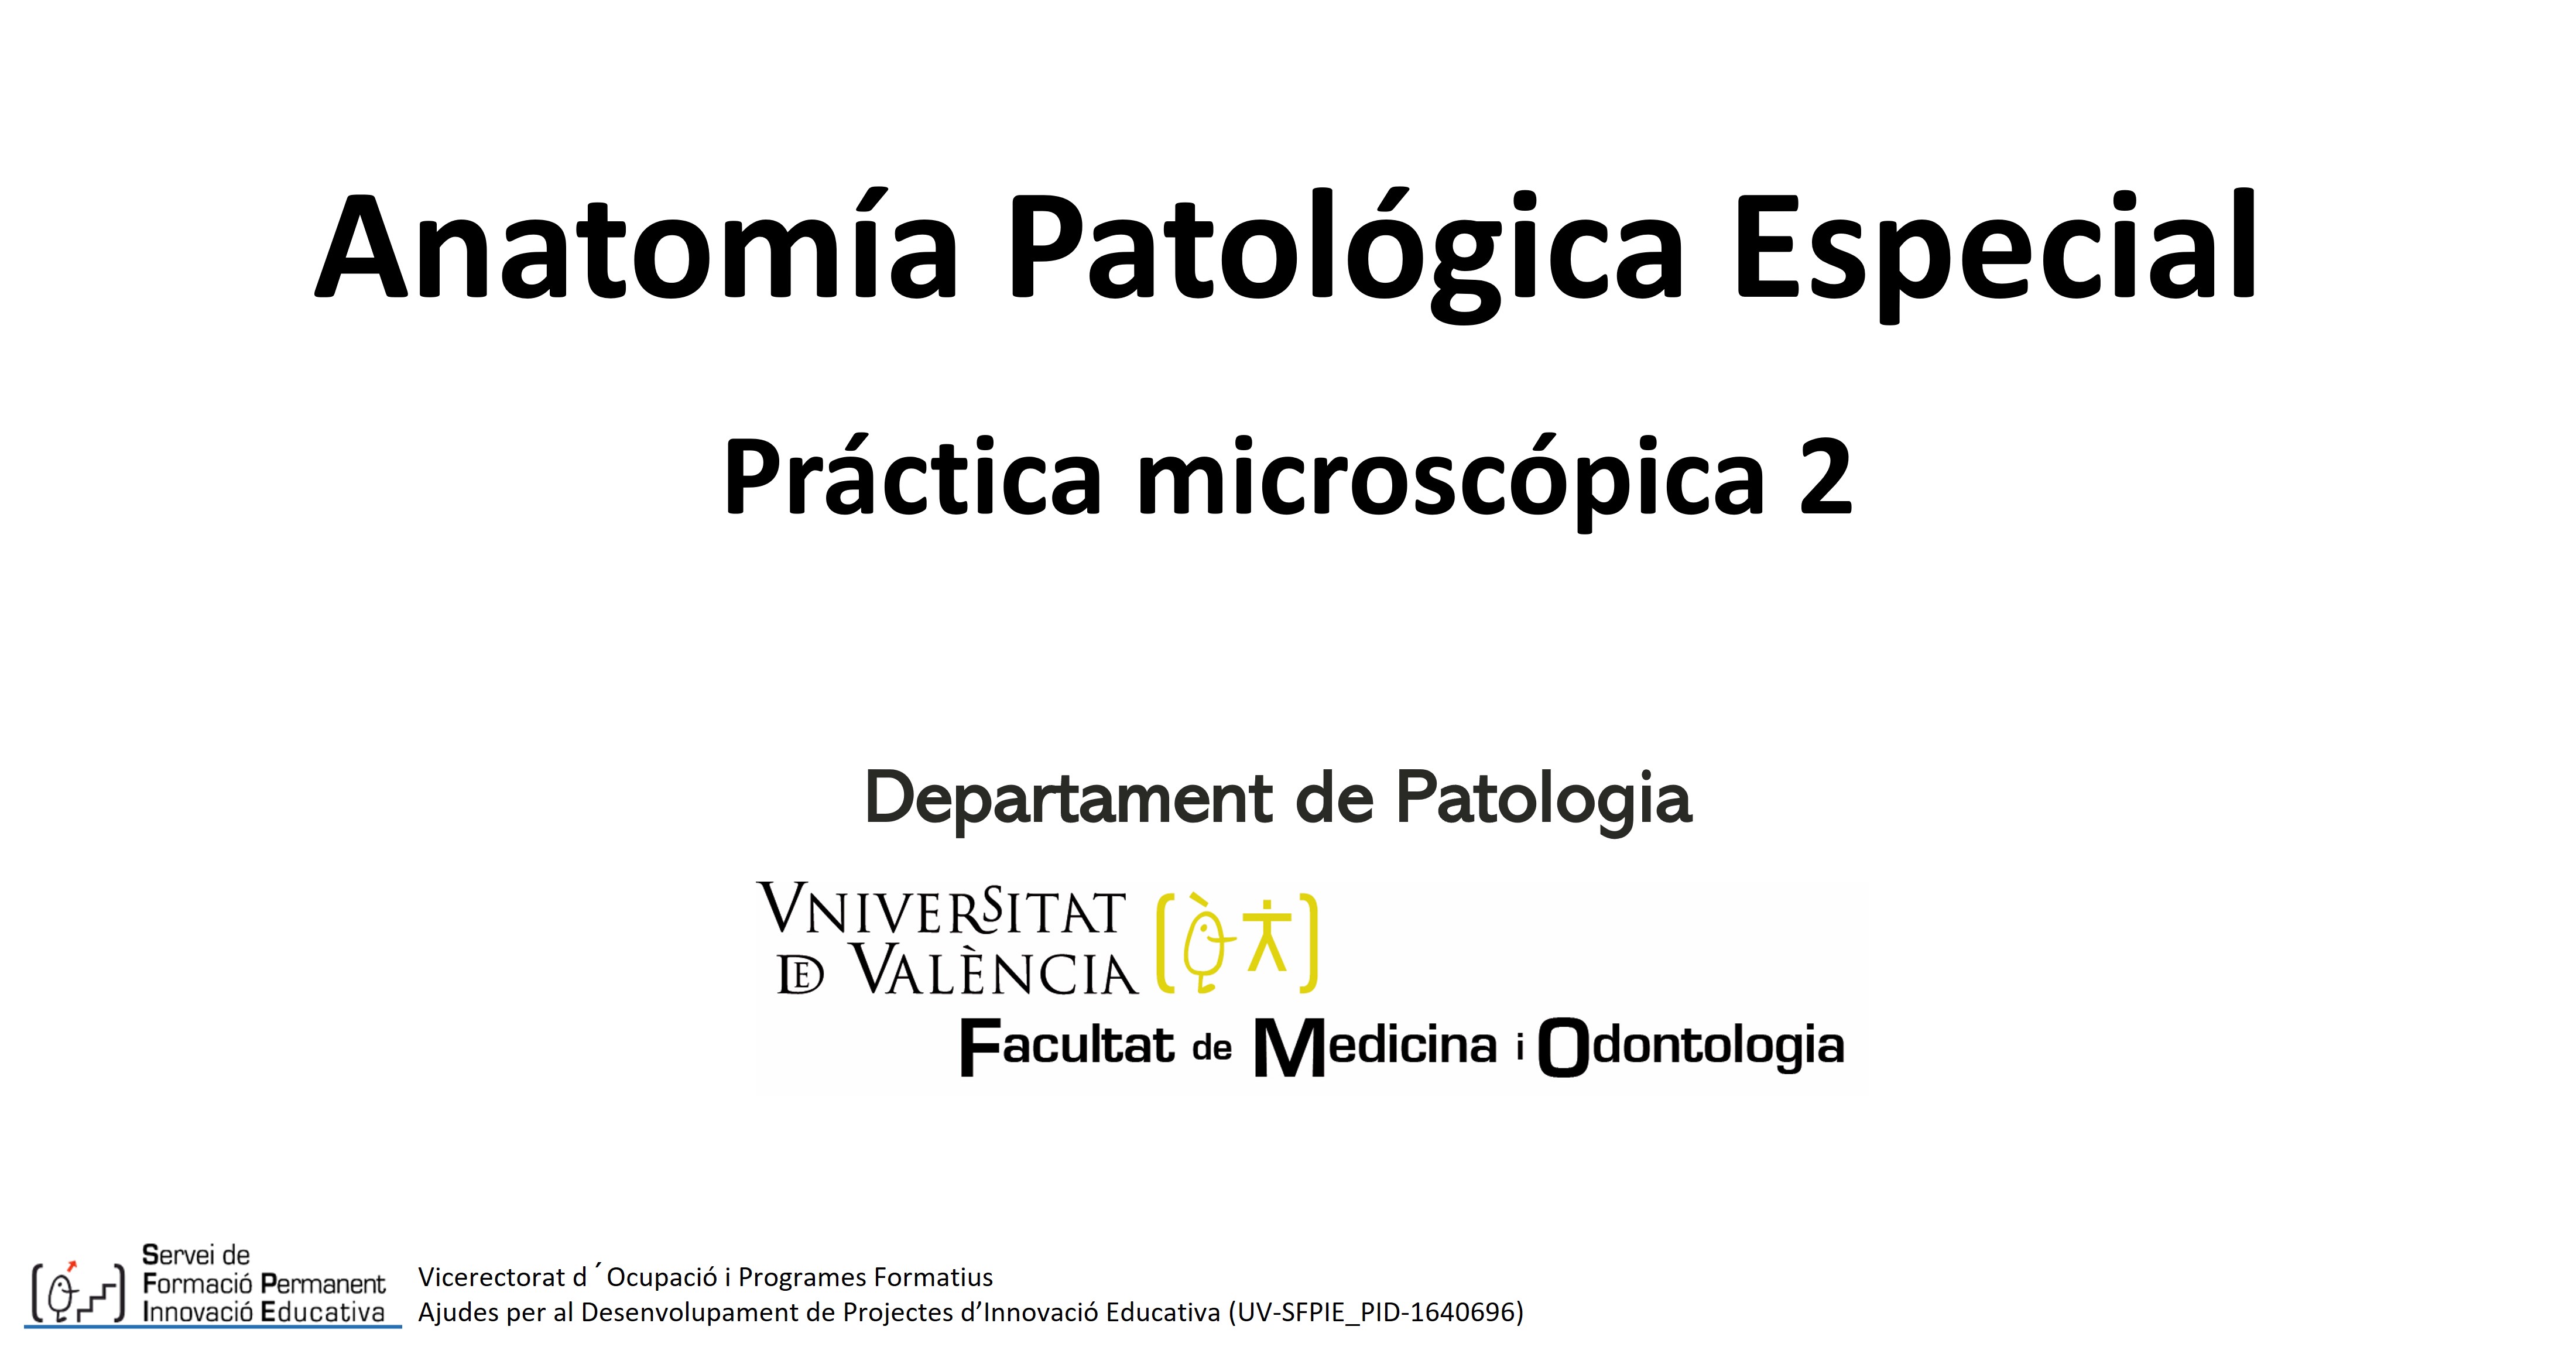 Anatomía Patológica Especial - Práctica Microscópica 2